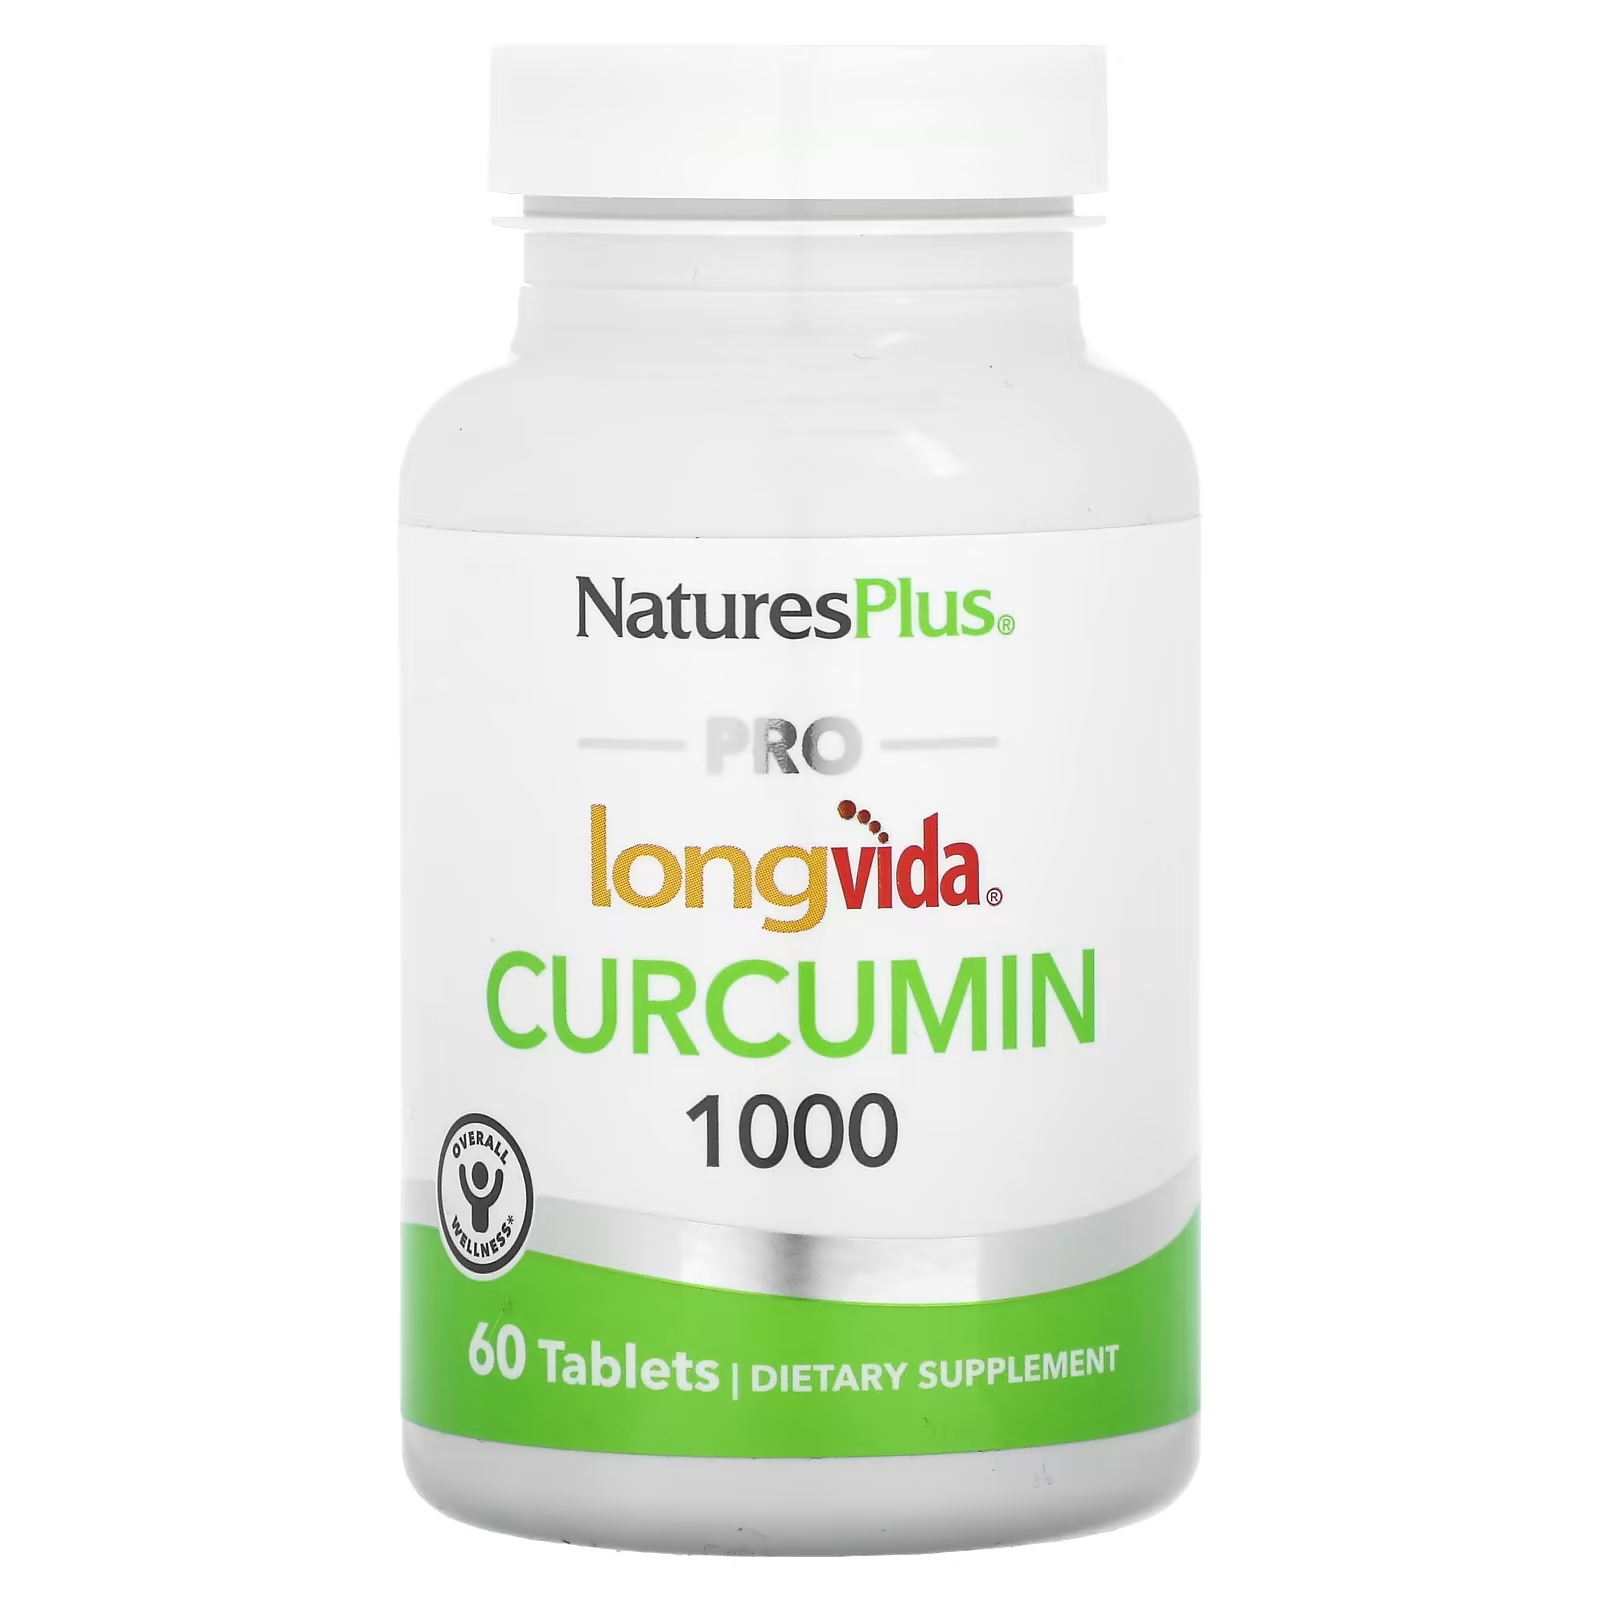 NaturesPlus Pro Longvida Куркумин 1000 60 таблеток naturesplus куркумин с имбирем и черным перцем персик 60 жевательных таблеток